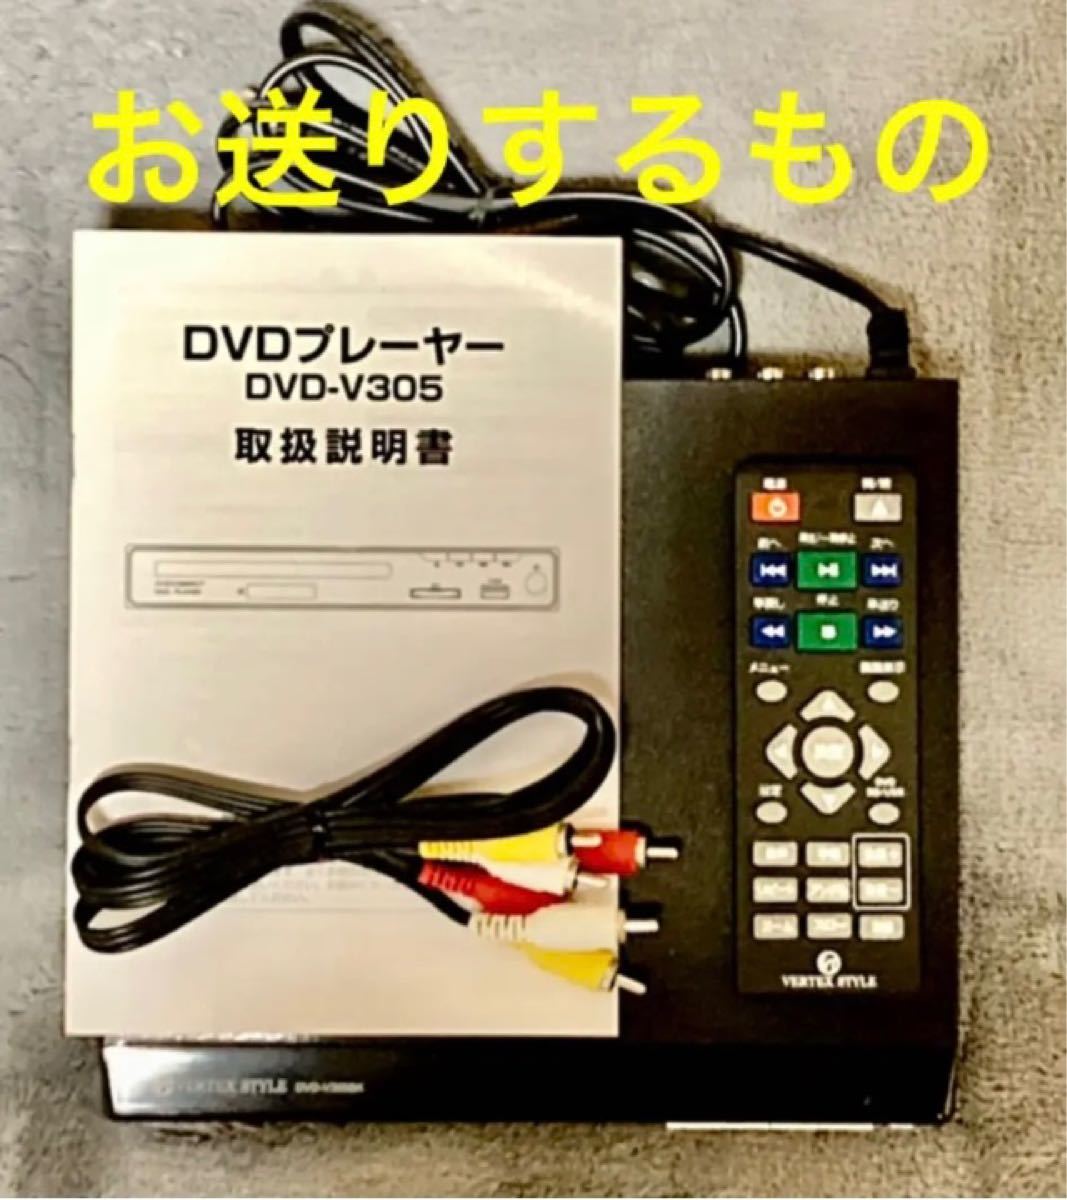 限定モデル VERTEX DVDプレーヤー DVD-V305 BK ブラック manjares.cl